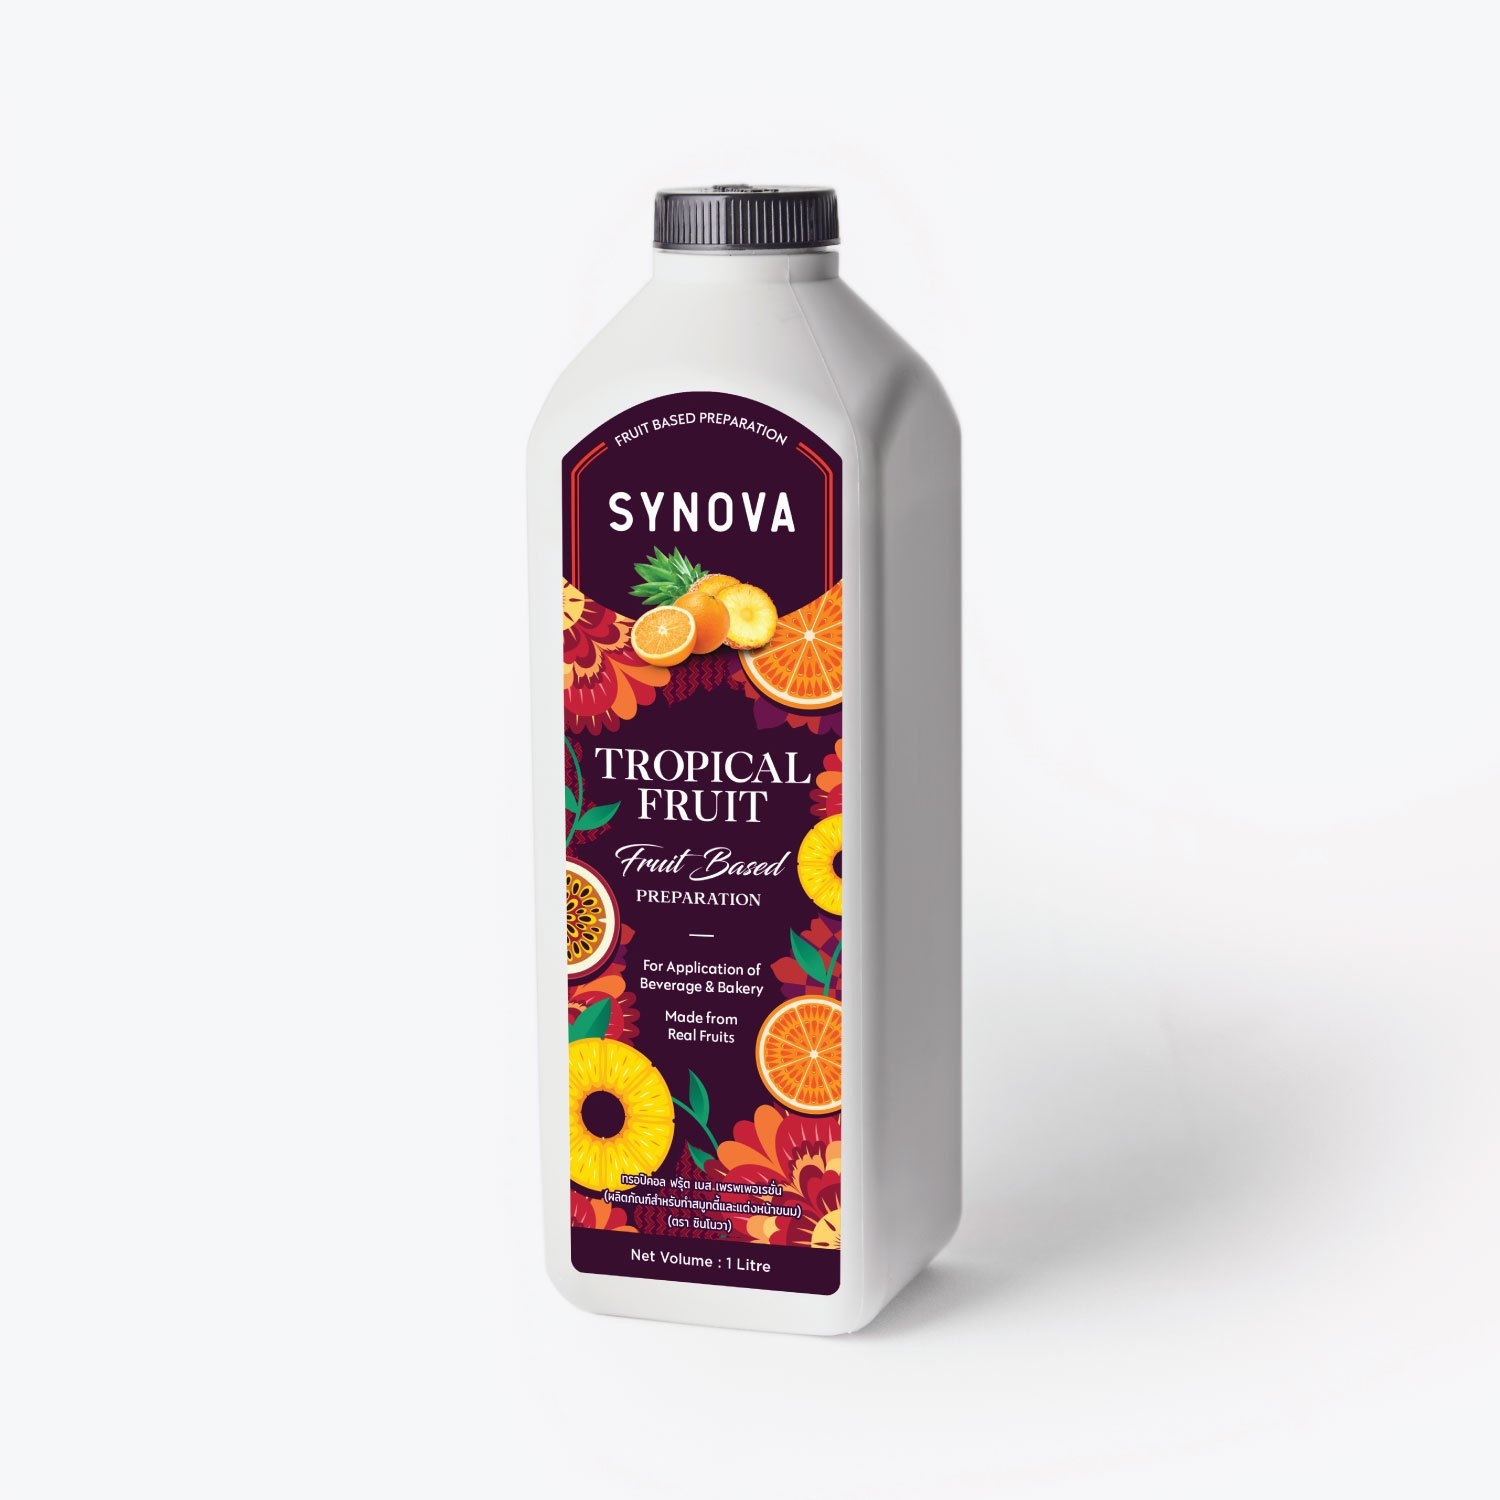 น้ำผลไม้เข้มข้น : SYNOVA ซอสทรอปปิคอลเข้มข้น (ขวด)